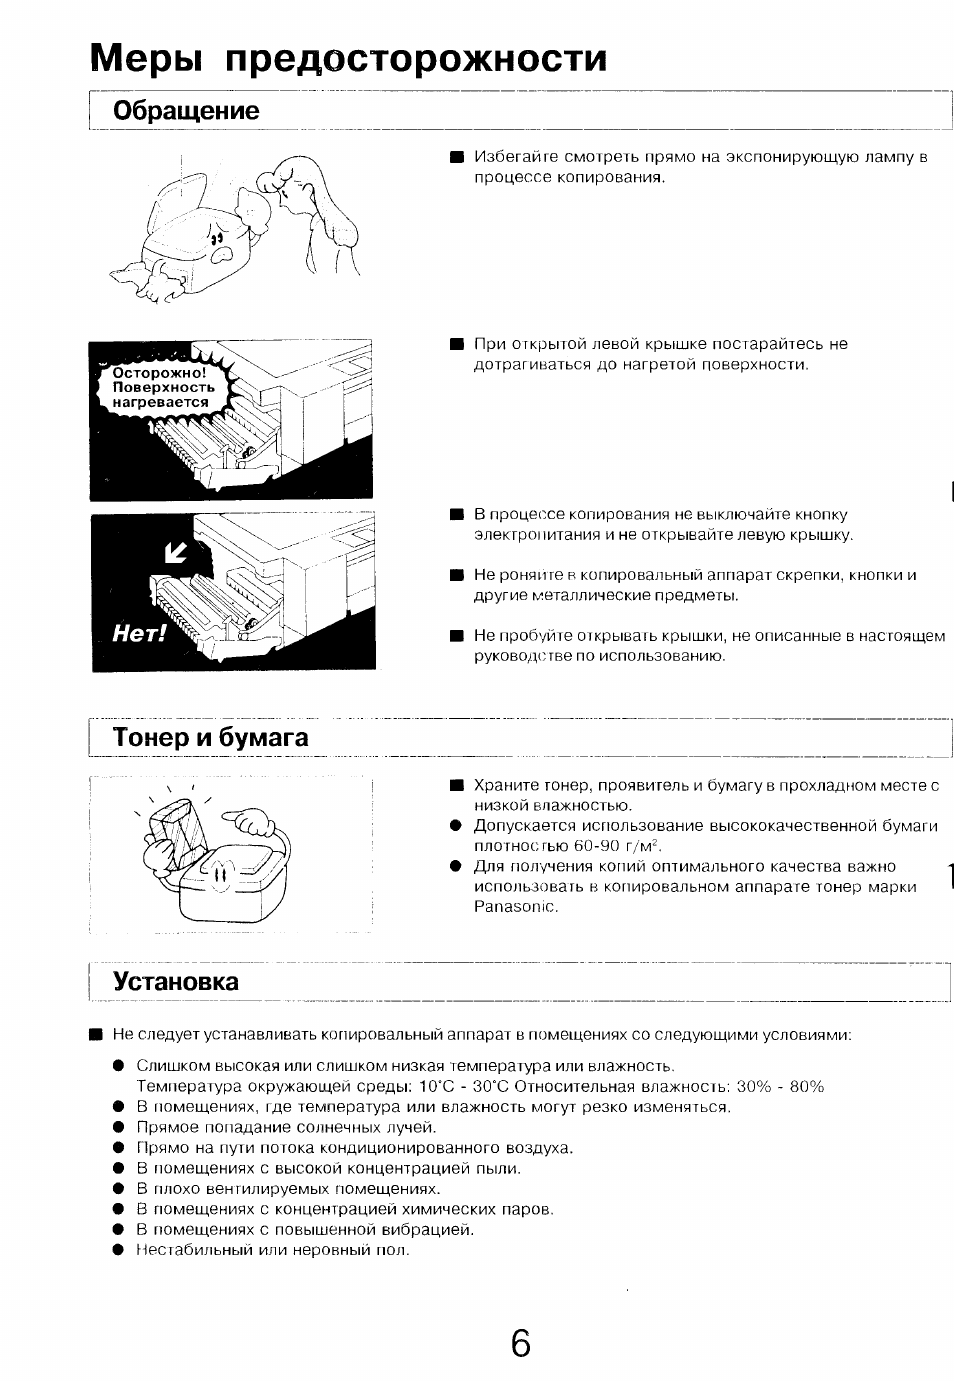 Меры предосторожности, Обращение, Тонер и бумага | Установка | Инструкция по эксплуатации Panasonic FP-7113 | Страница 6 / 19